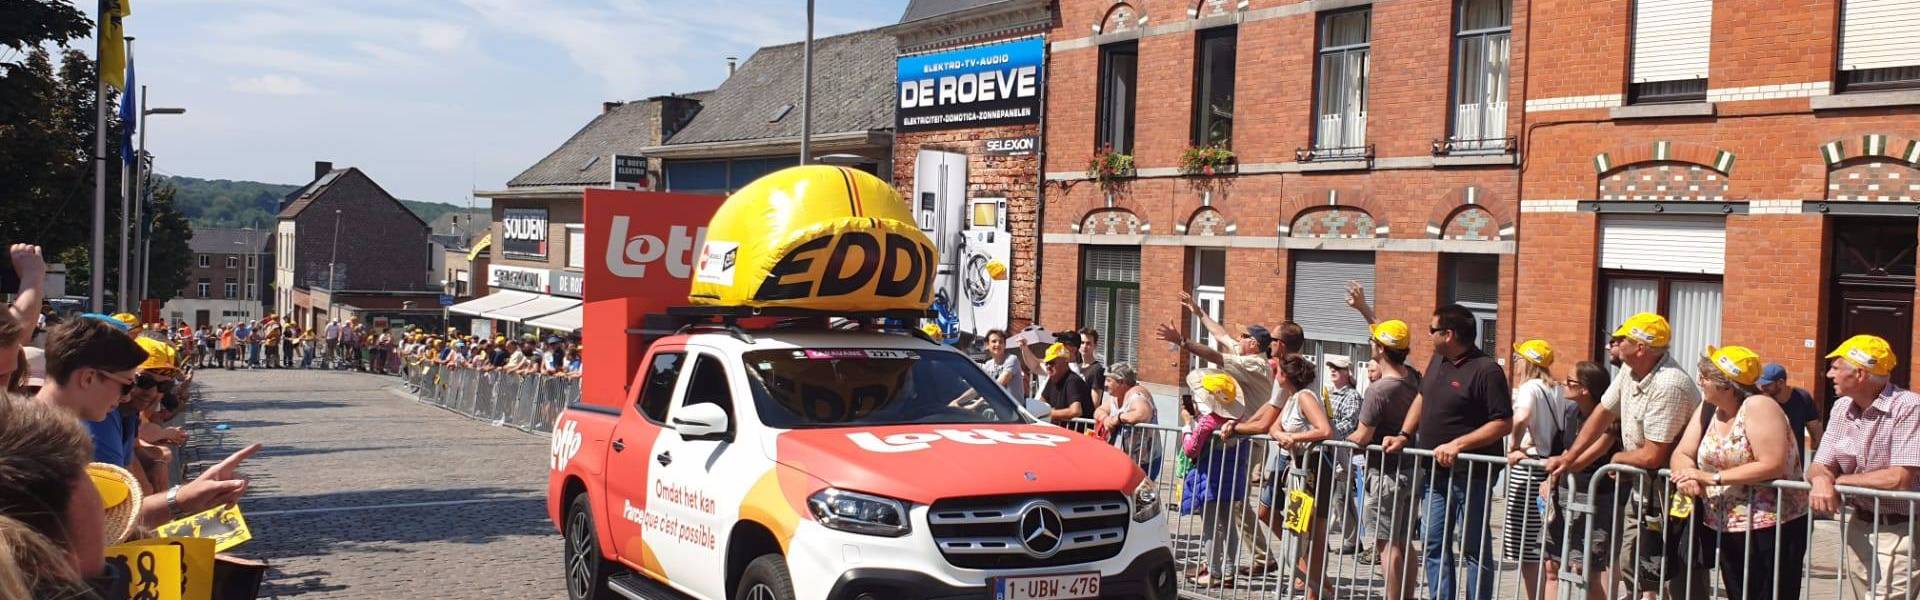 Großes aufblasbares Werbematerial | X-Treme Creations Aufblasbare gelbe Kappe von Eddy Merckx mit Lotto-Branding an den Seiten in der Hitze des Gefechts während eines klassischen belgischen Radrennens, produziert für die Nationale Loterij Lotto E-Demonstrations X-Treme Creations